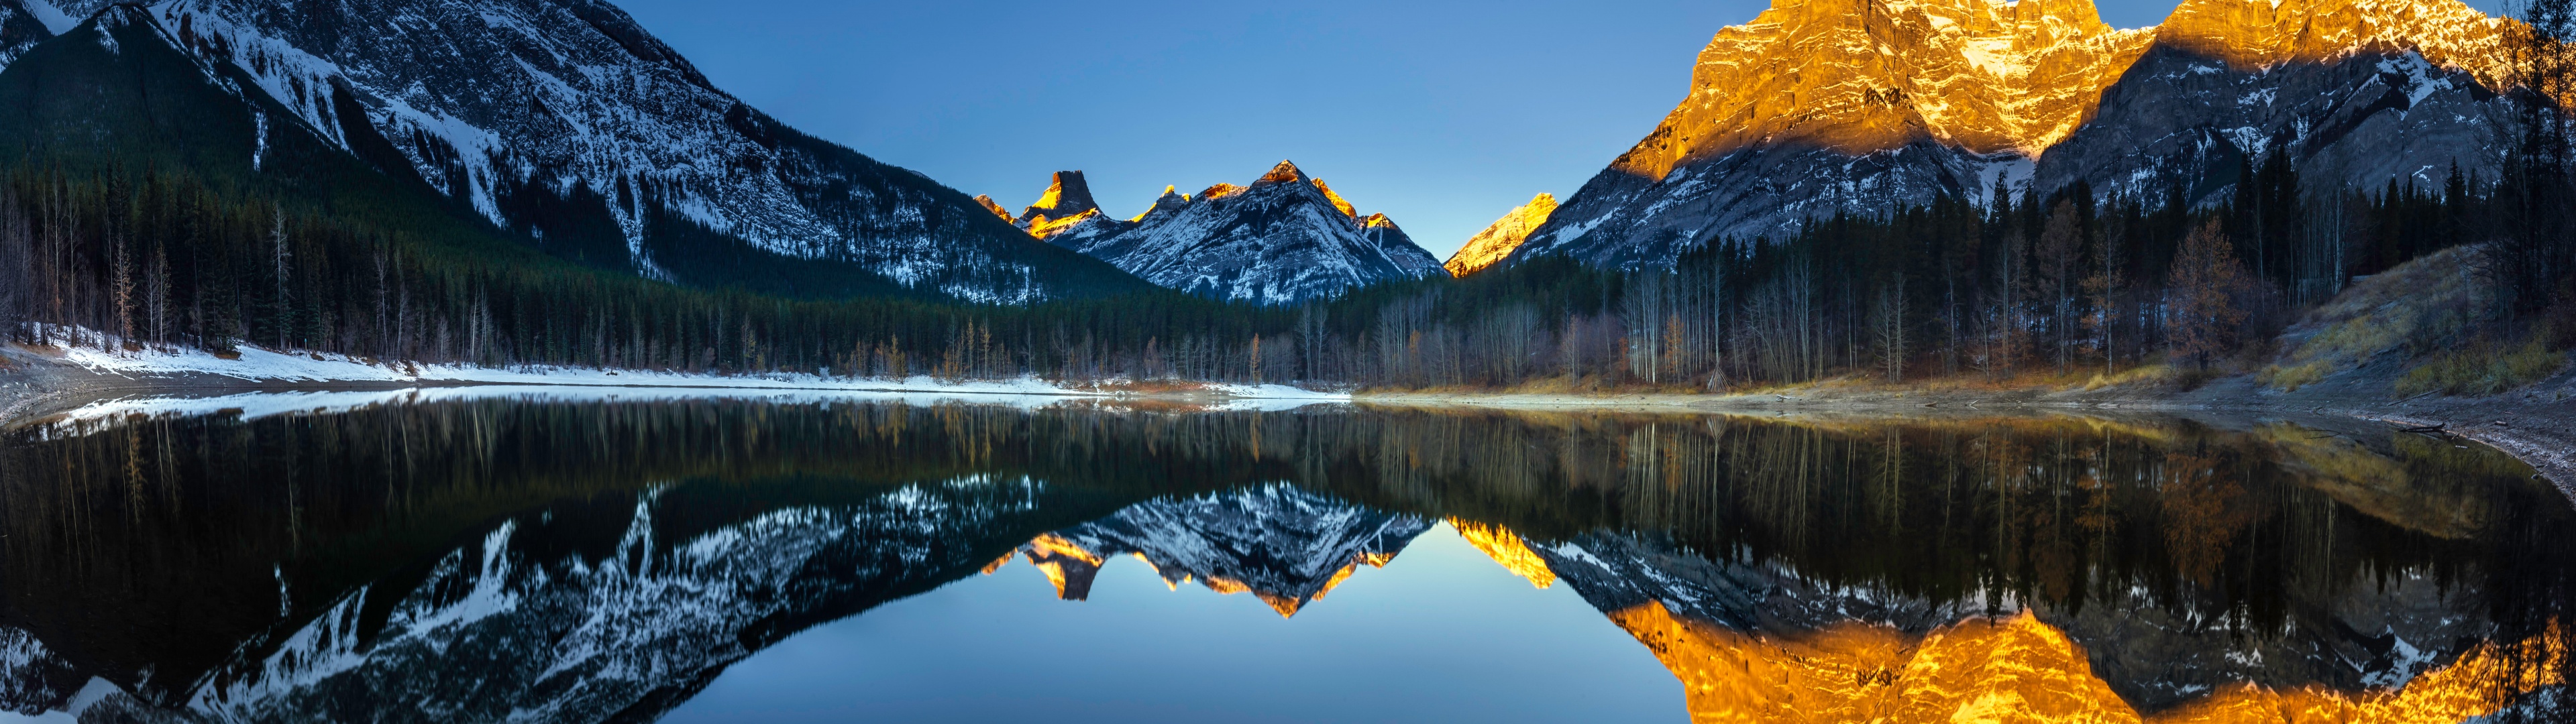 Thiên nhiên luôn đẹp đến kỳ diệu. Nếu bạn yêu thích những bức tranh thiên nhiên tuyệt đẹp, thì không thể bỏ qua hình nền đầm Wedge 4K được chụp tại vườn quốc gia Banff. Với màu xanh ngắt của đầm nước kết hợp với những ngọn núi đá trùng điệp, bạn sẽ cảm nhận được sự hòa quyện giữa con người và thiên nhiên.